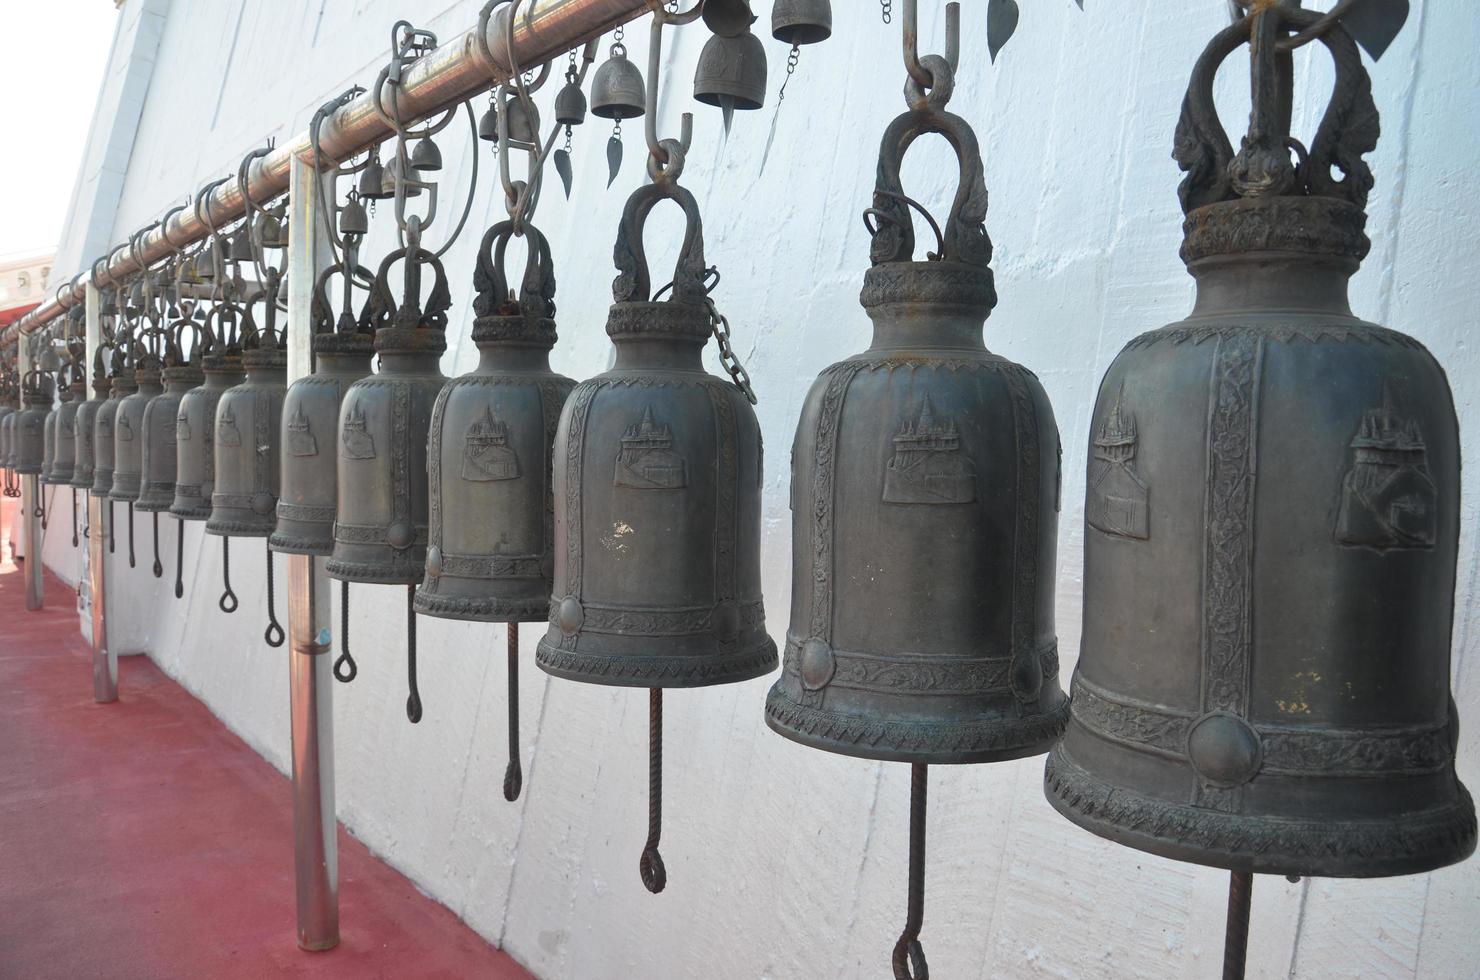 campane a il d'oro montare tempio. importante turista attrazioni nel Tailandia siamo popolare con stranieri. foto